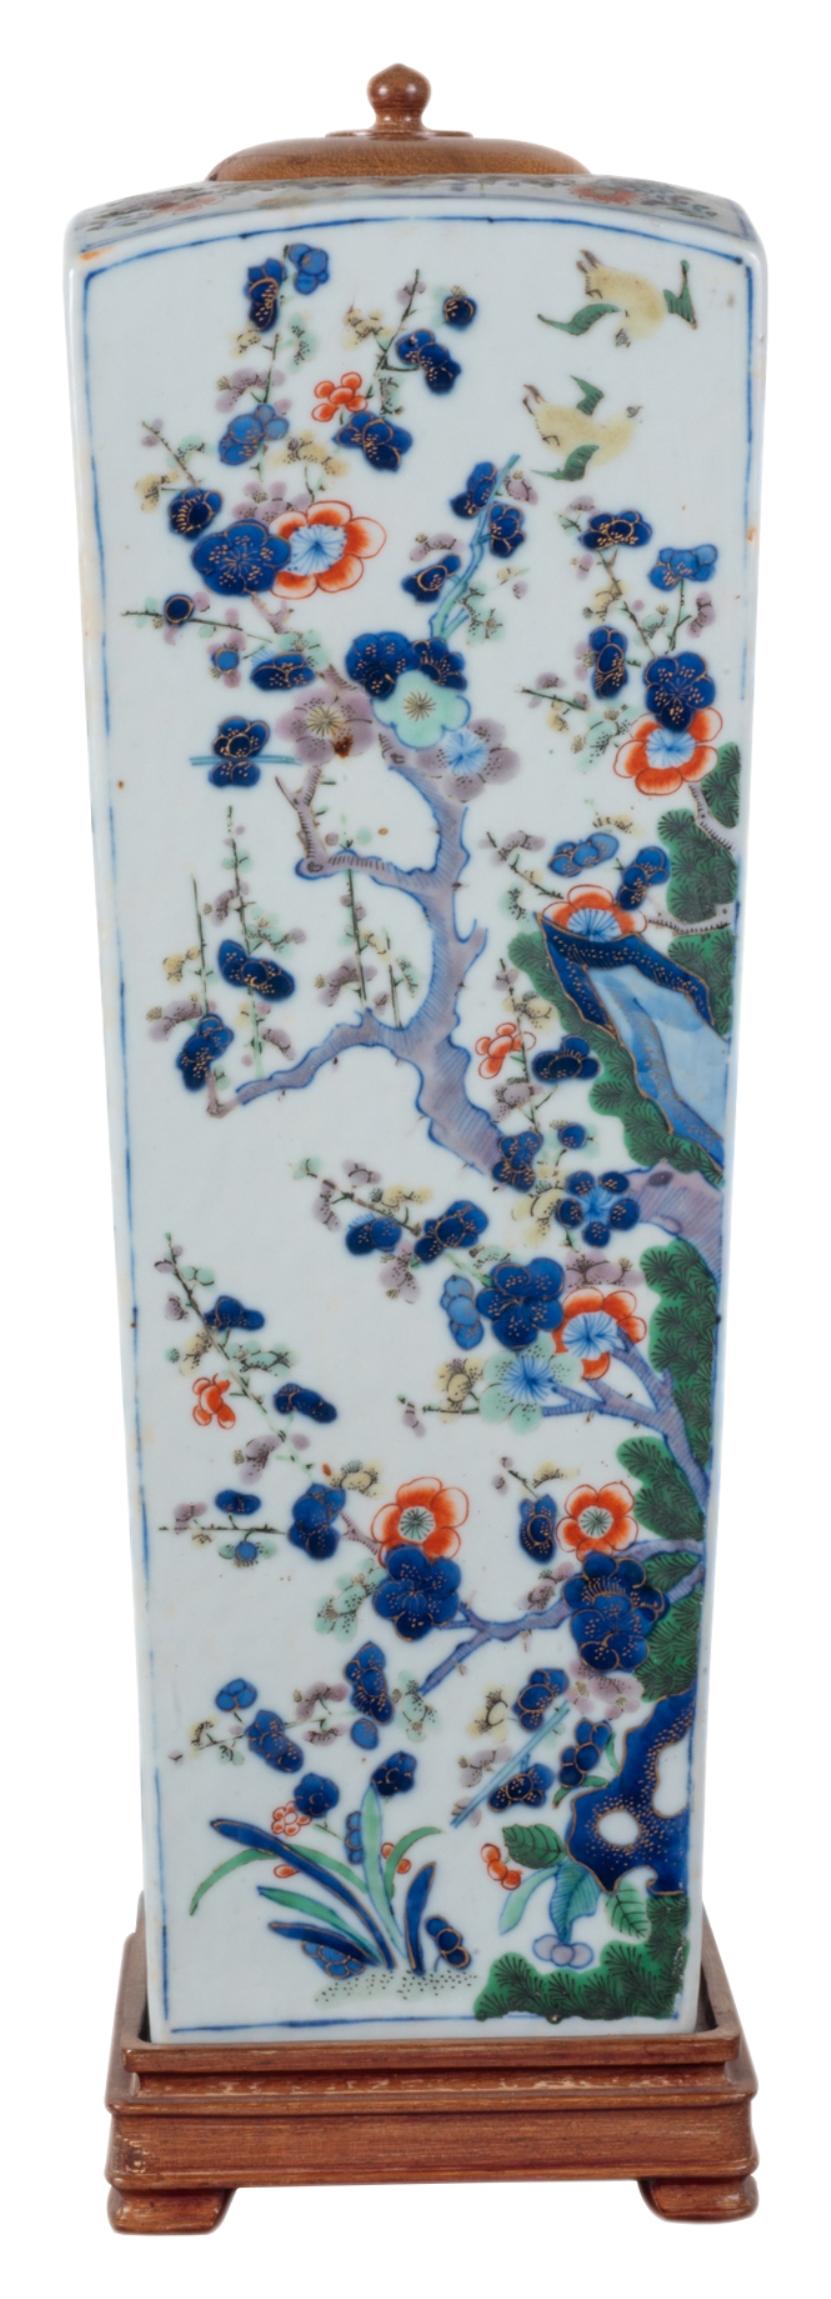 Eine chinesische Famille Verte-Vase oder -Lampe von guter Qualität aus dem 19. Jahrhundert in quadratischer, sich verjüngender Form. Mit wunderschönen klassischen Prunusblütenbäumen und exotischen Blumen, mit Holzdeckel und -boden.